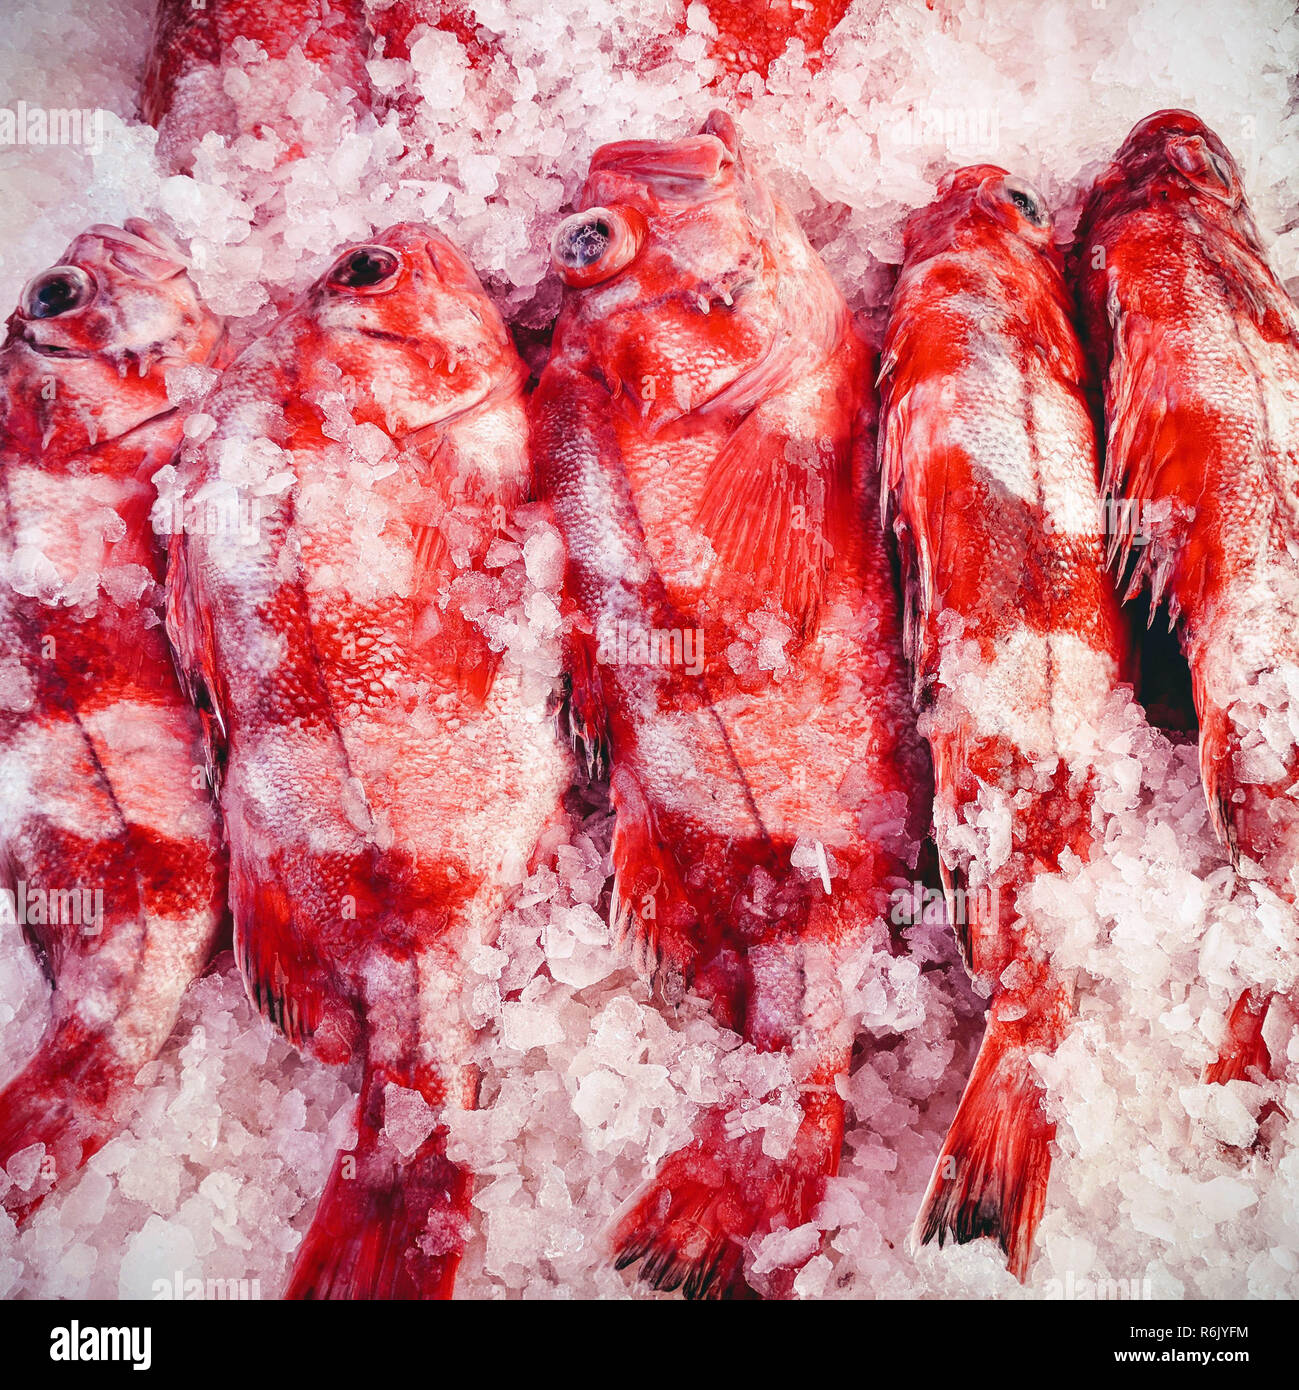 Redbanded pesce (Sebastes babcocki) su ghiaccio per la vendita su una barca presso il Fisherman's docks in Steveston, Richmond, British Columbia Foto Stock